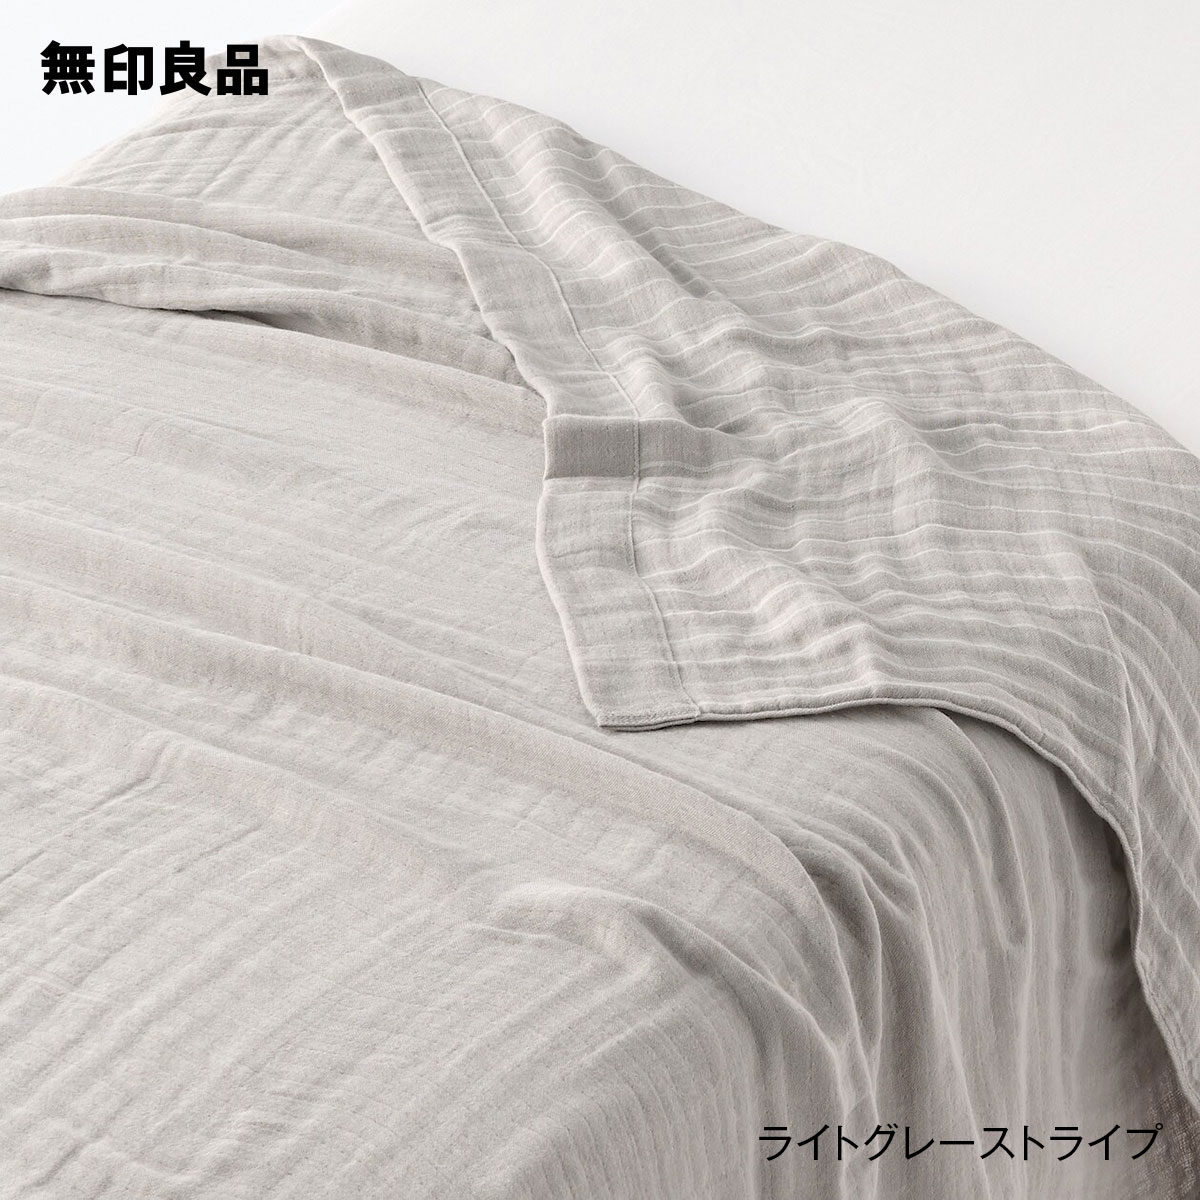 無印良品の【ダブル】四重ガーゼケット・180×200cm(布団・寝具)